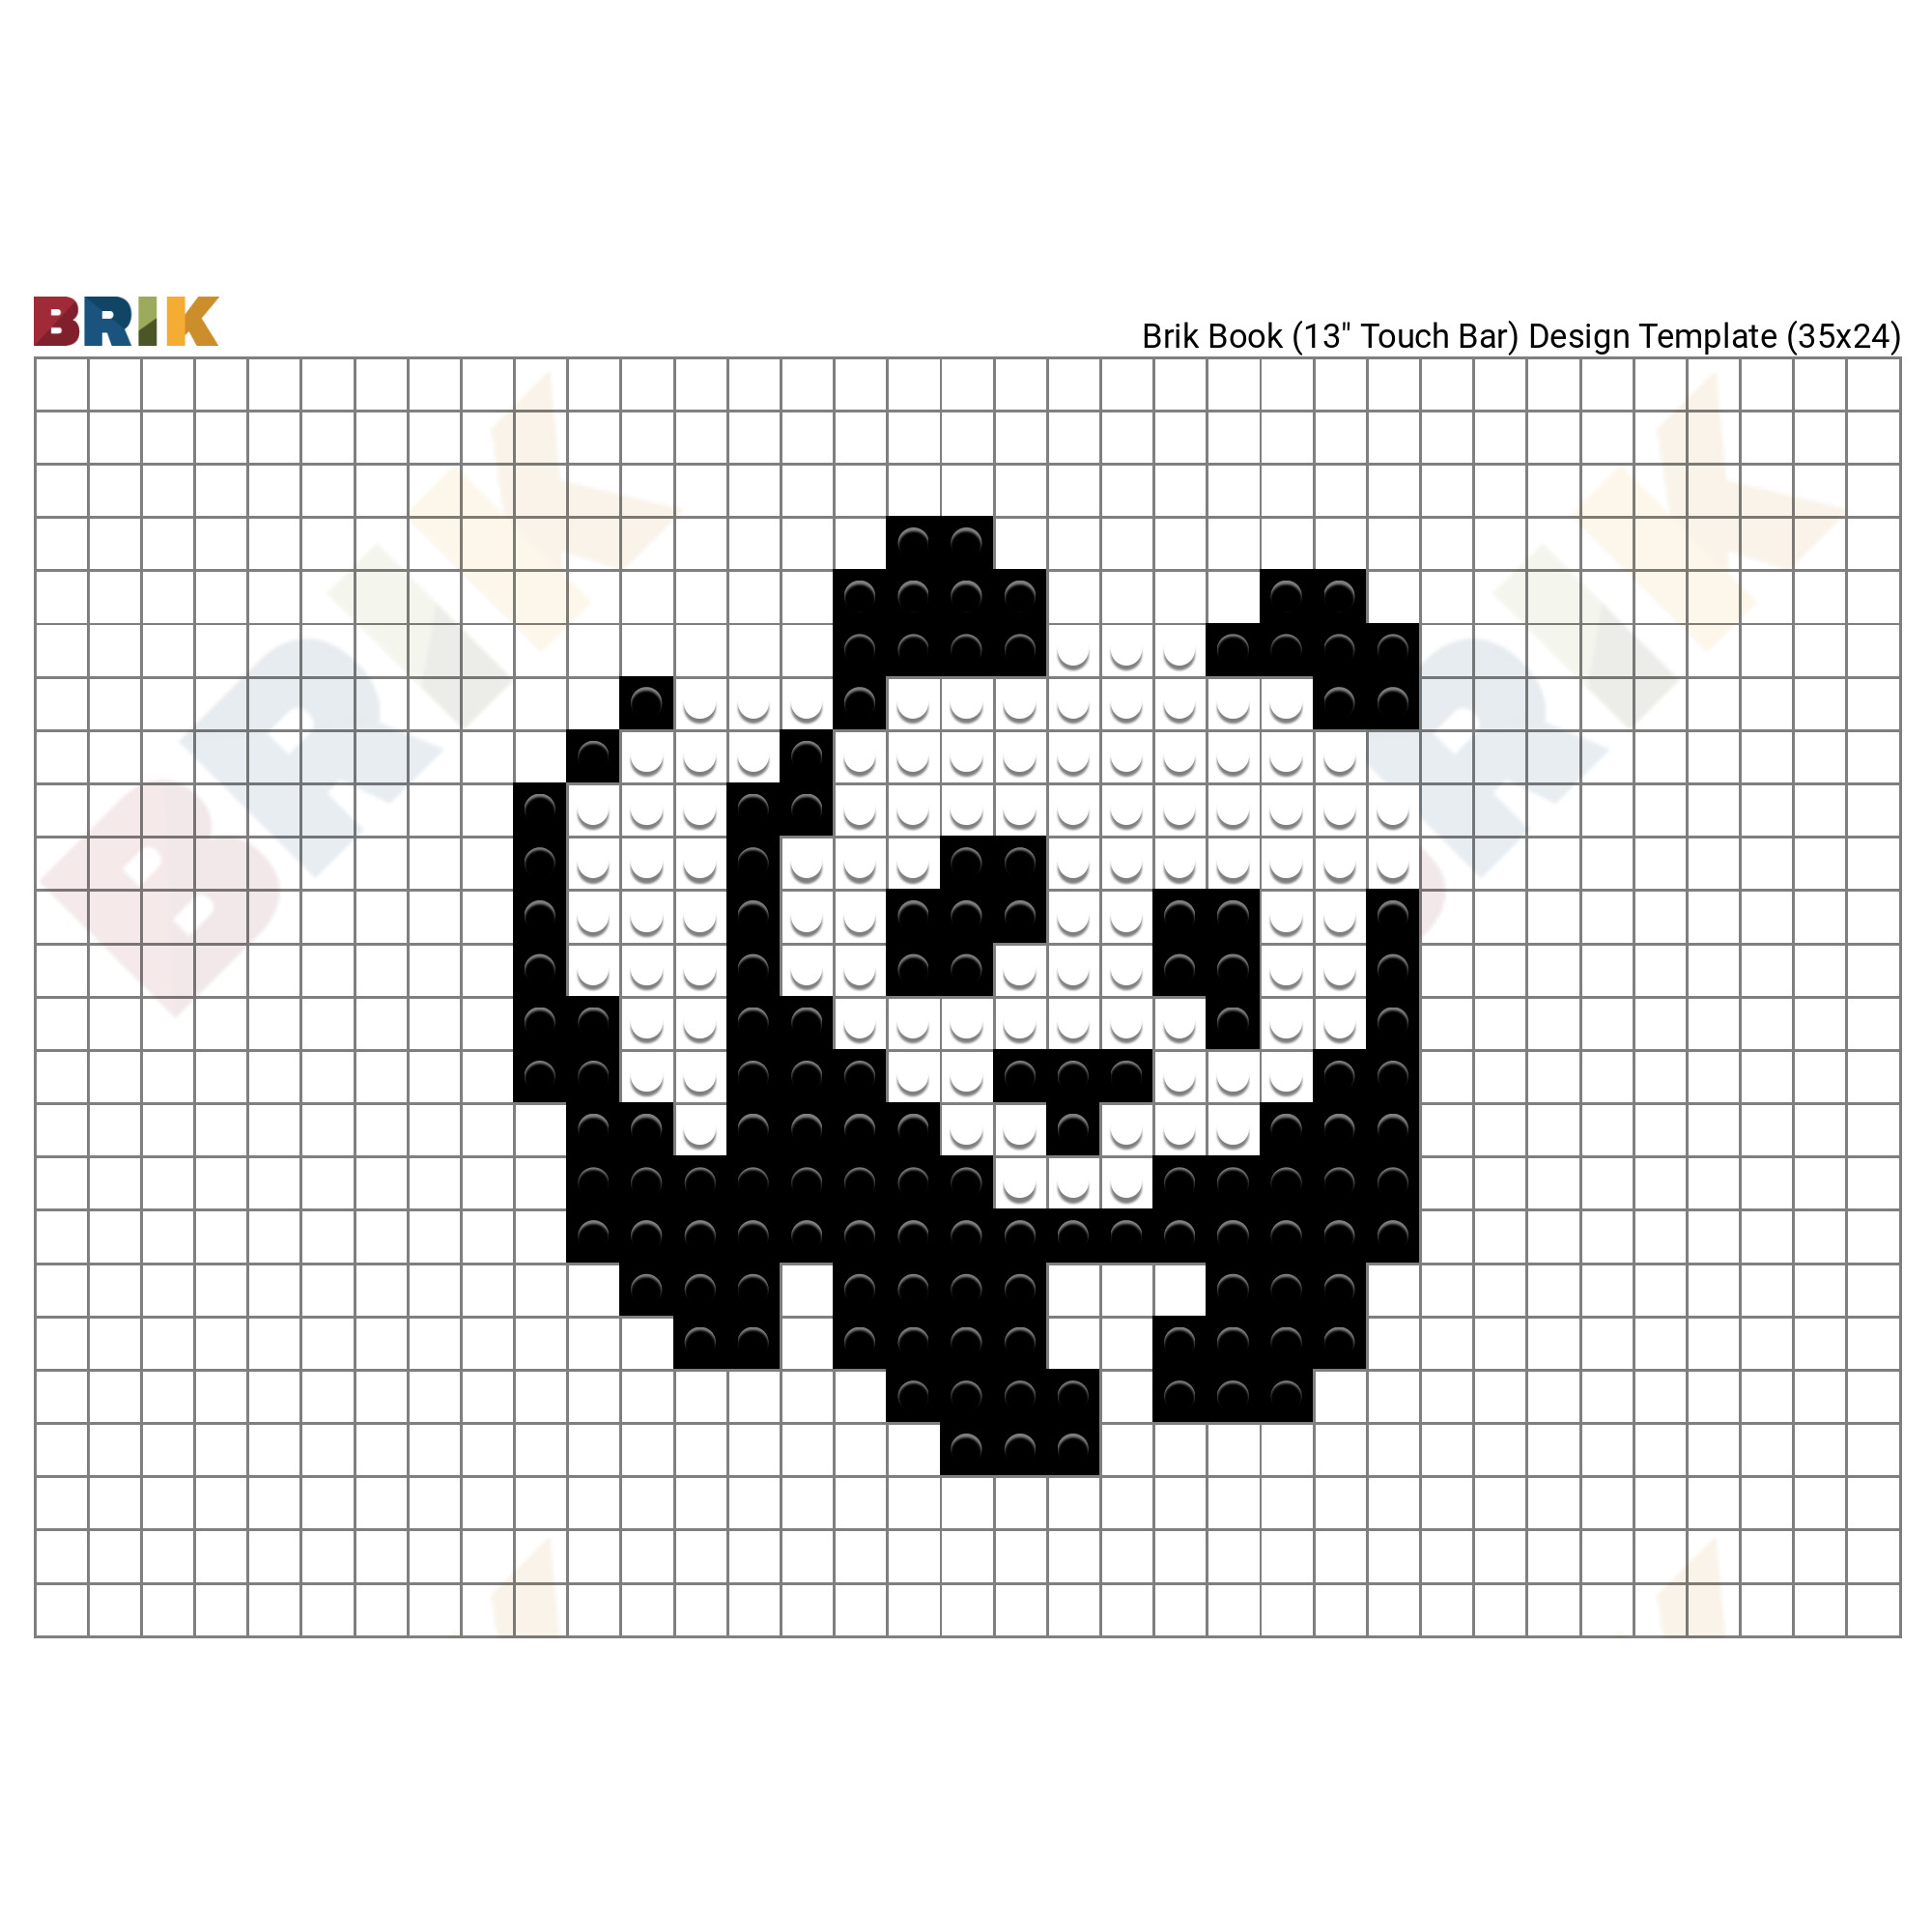 Cute Panda Pixel Art